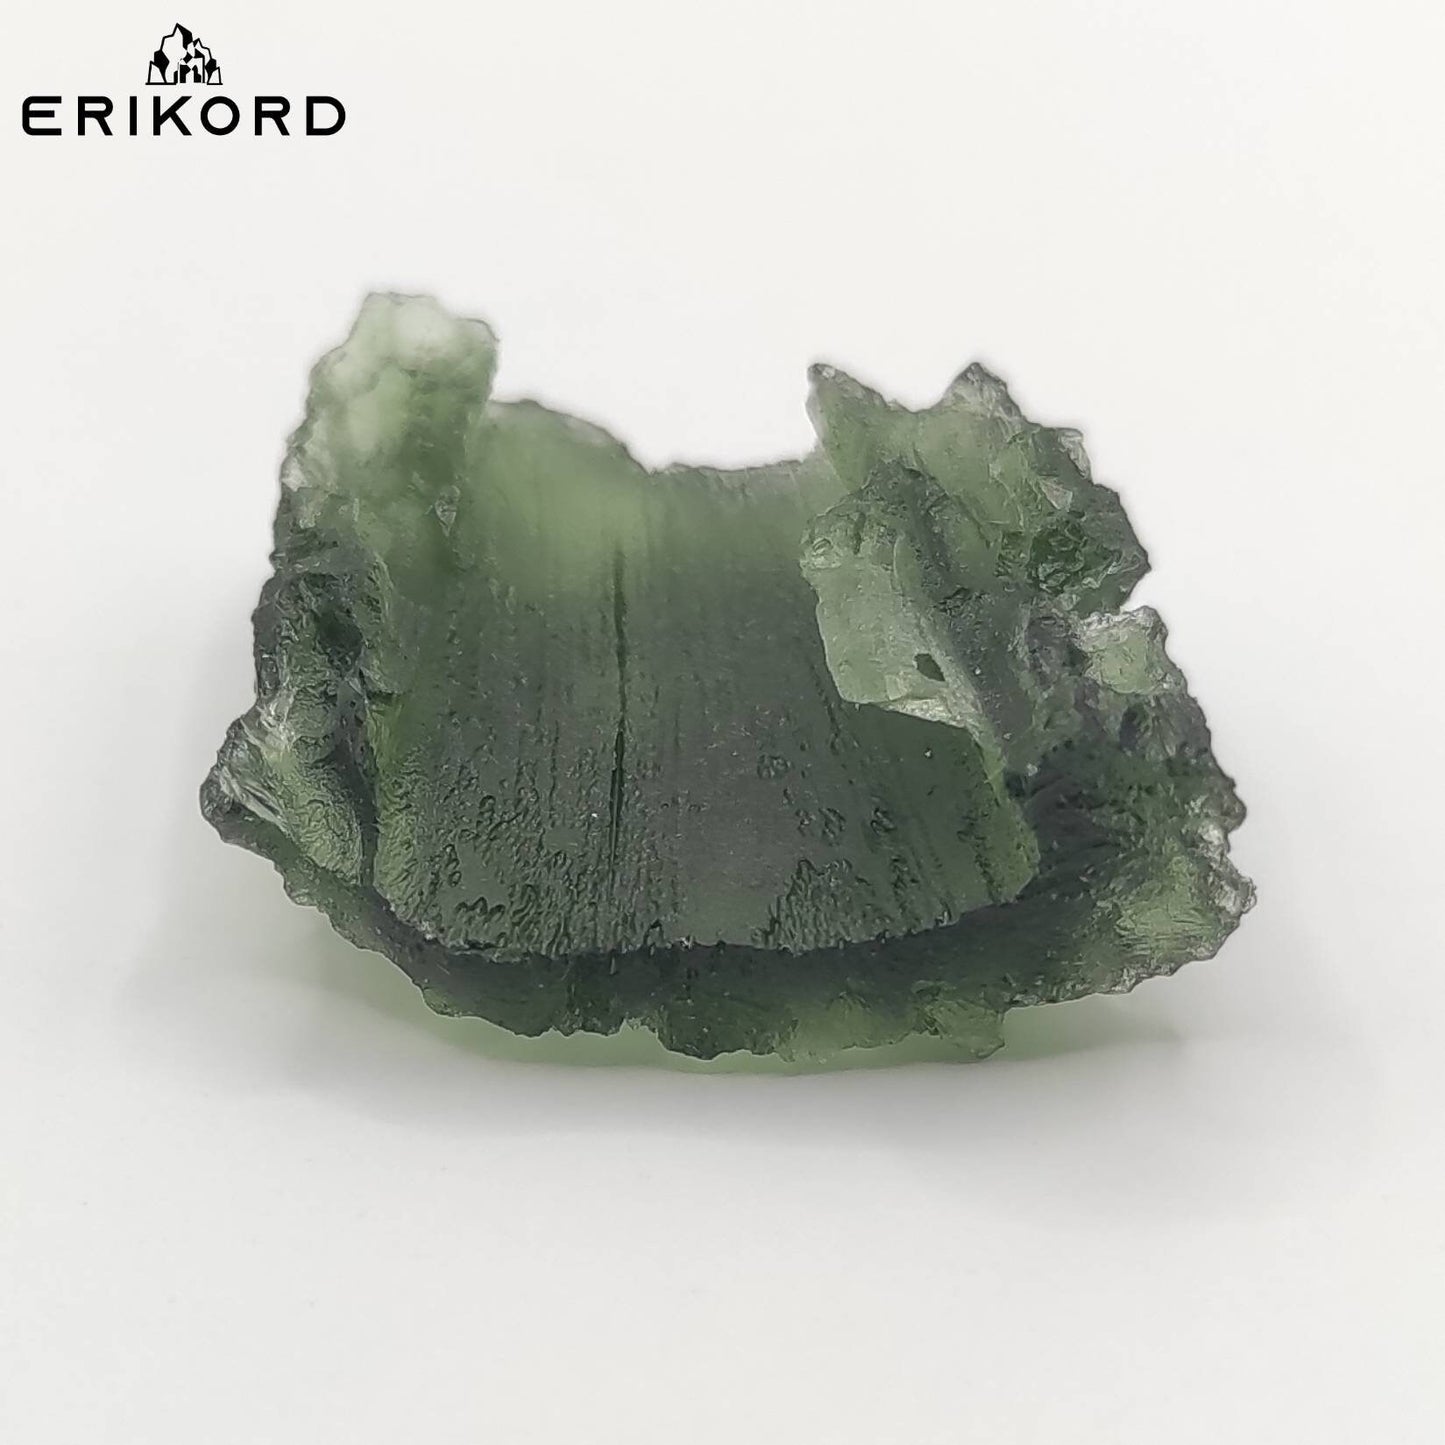 5.11g Rare Moldavite Specimen GENUINE Moldavite Czech Republic Raw Moldavite Authentic Moldavite Real Green Moldavite High Energy Crystal